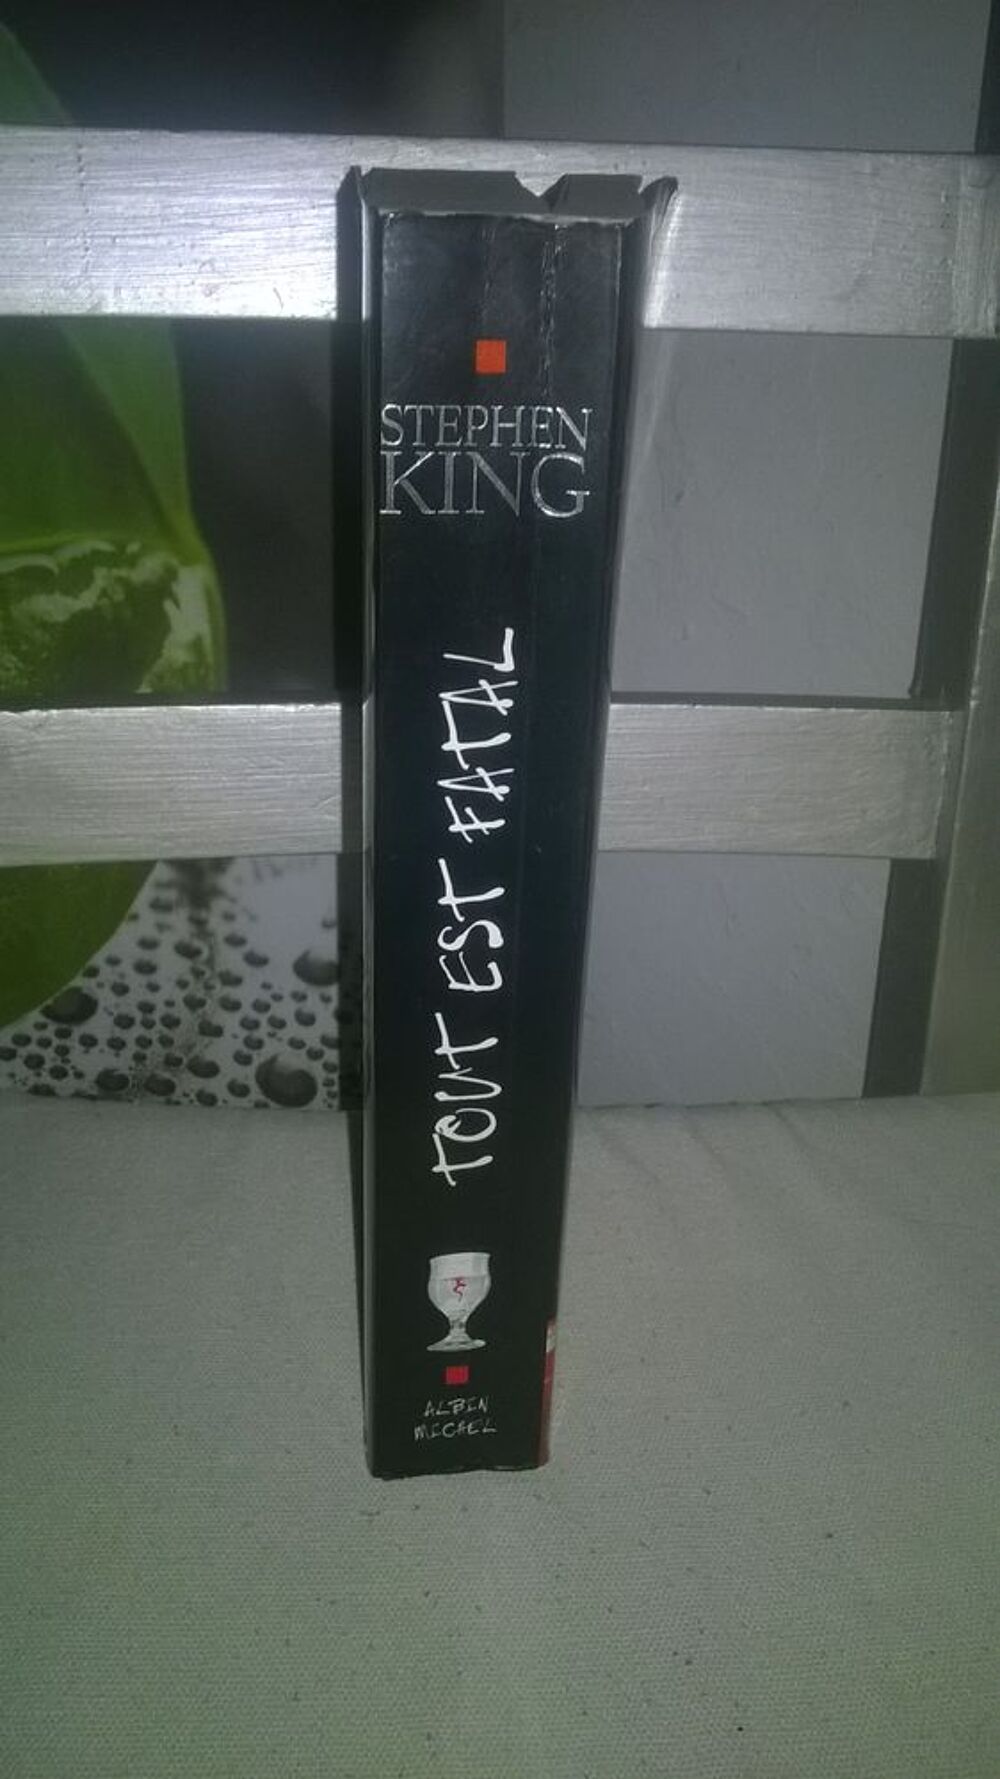 Livre Tout est fatal
Stephen King
2003
Quasi neuf
&Ccedil;a vou Livres et BD